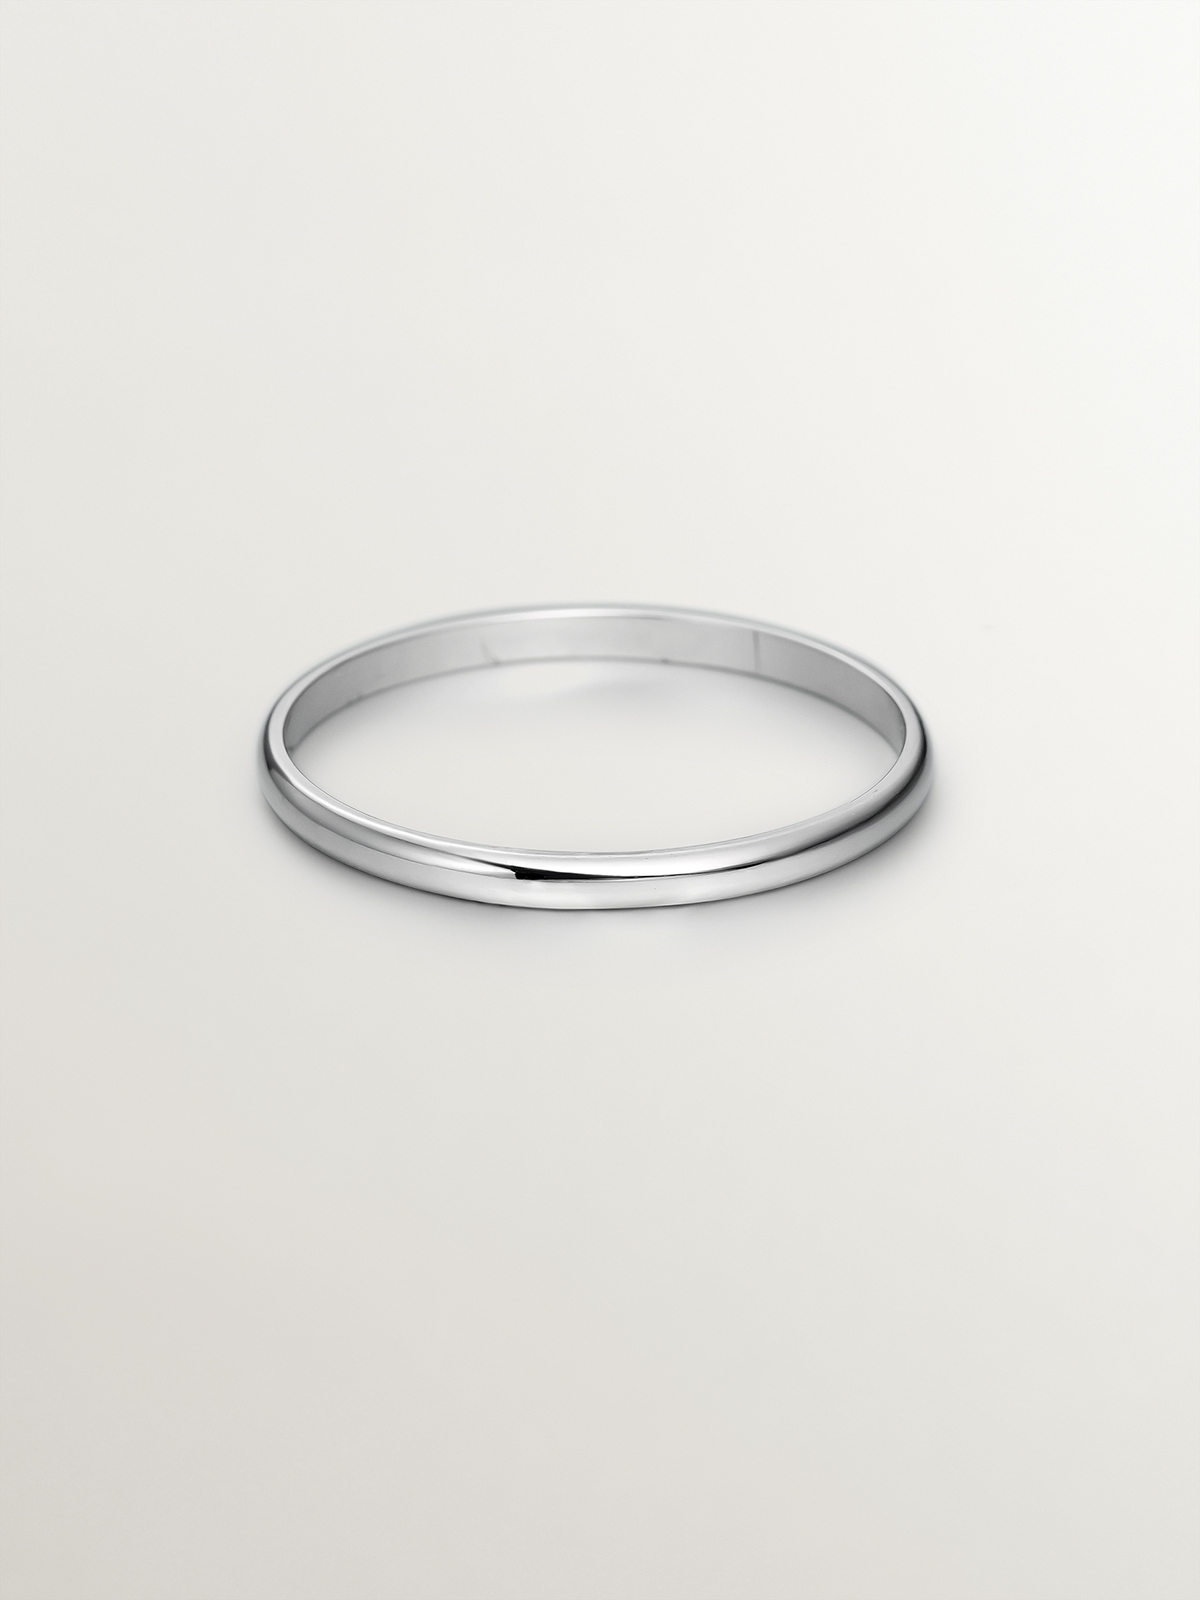 1.70mm half round white gold wedding ring